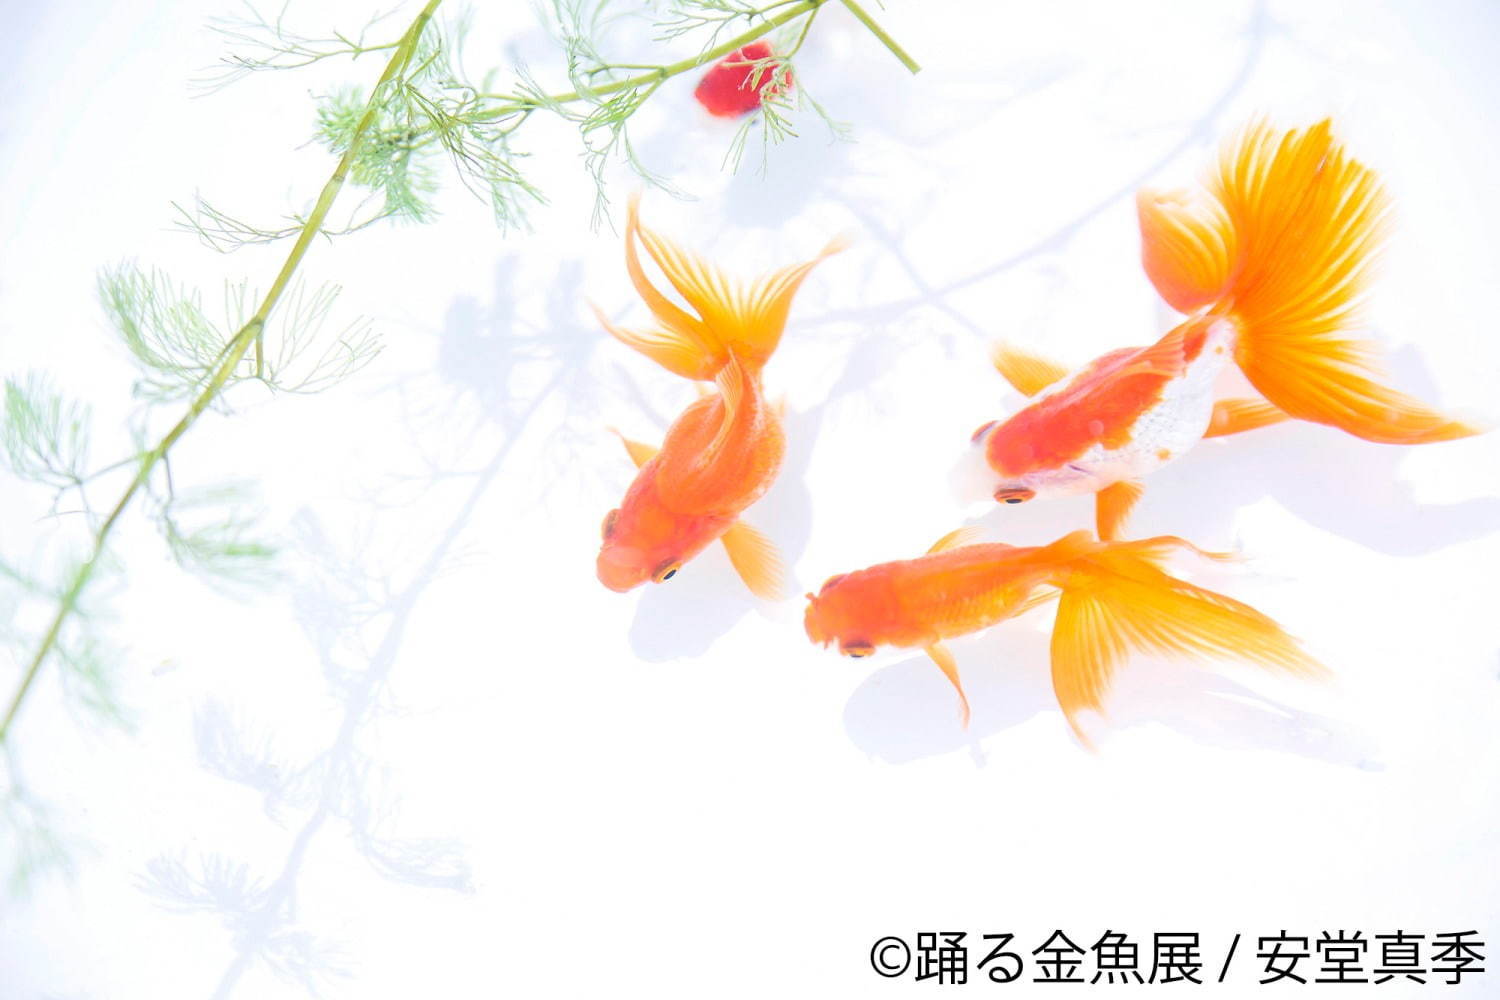 写真9 29 金魚の写真 イラスト展 踊る金魚展 東京 名古屋で ガラスアクセサリーなどグッズ販売も ファッションプレス